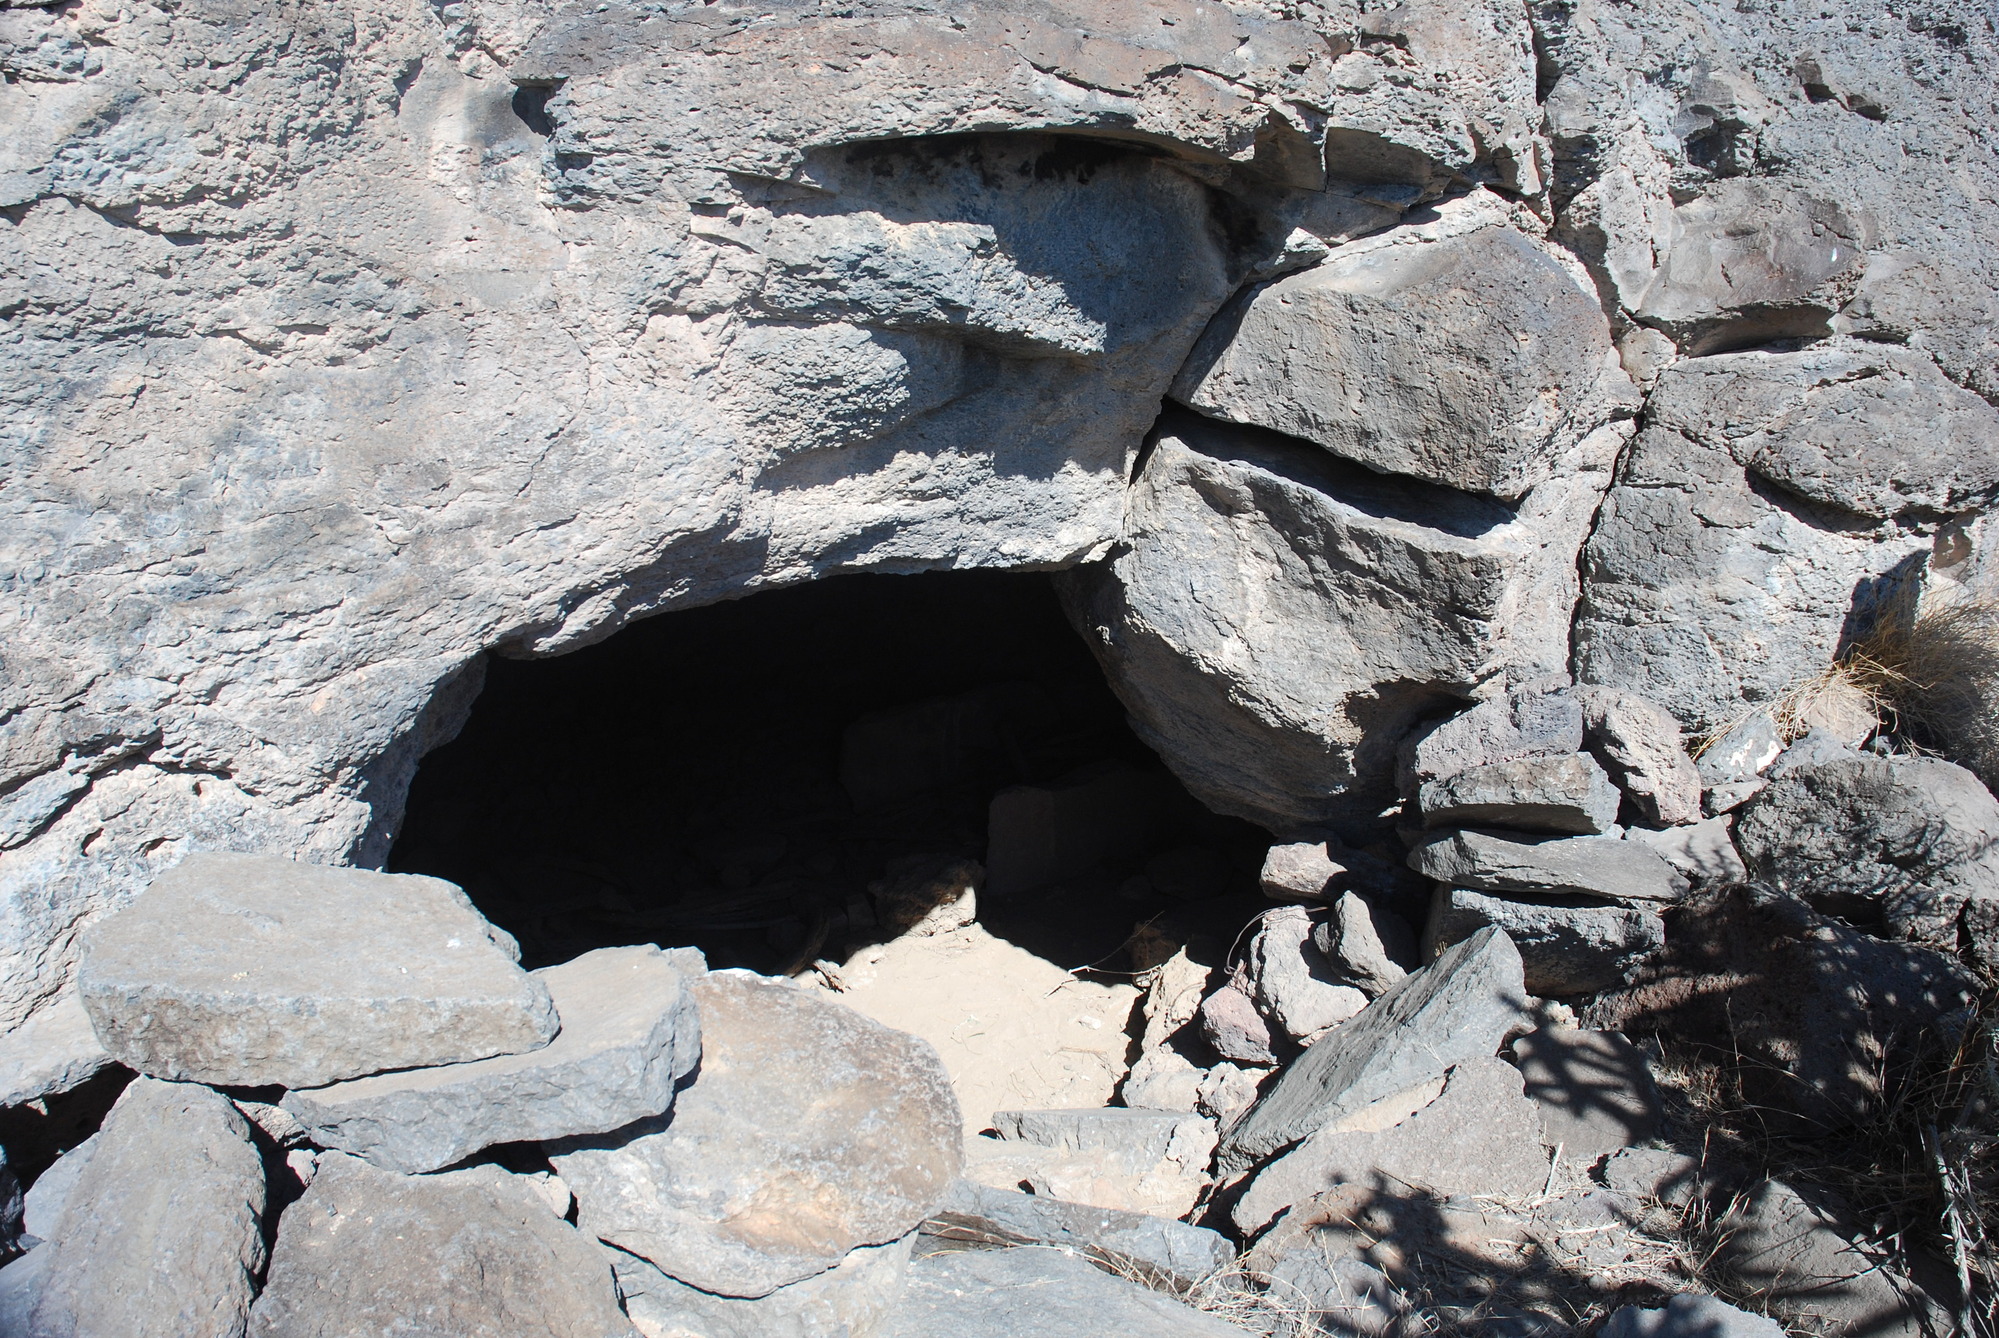 A hollow cave at La Bajada Mesa near Santa Fe, NM